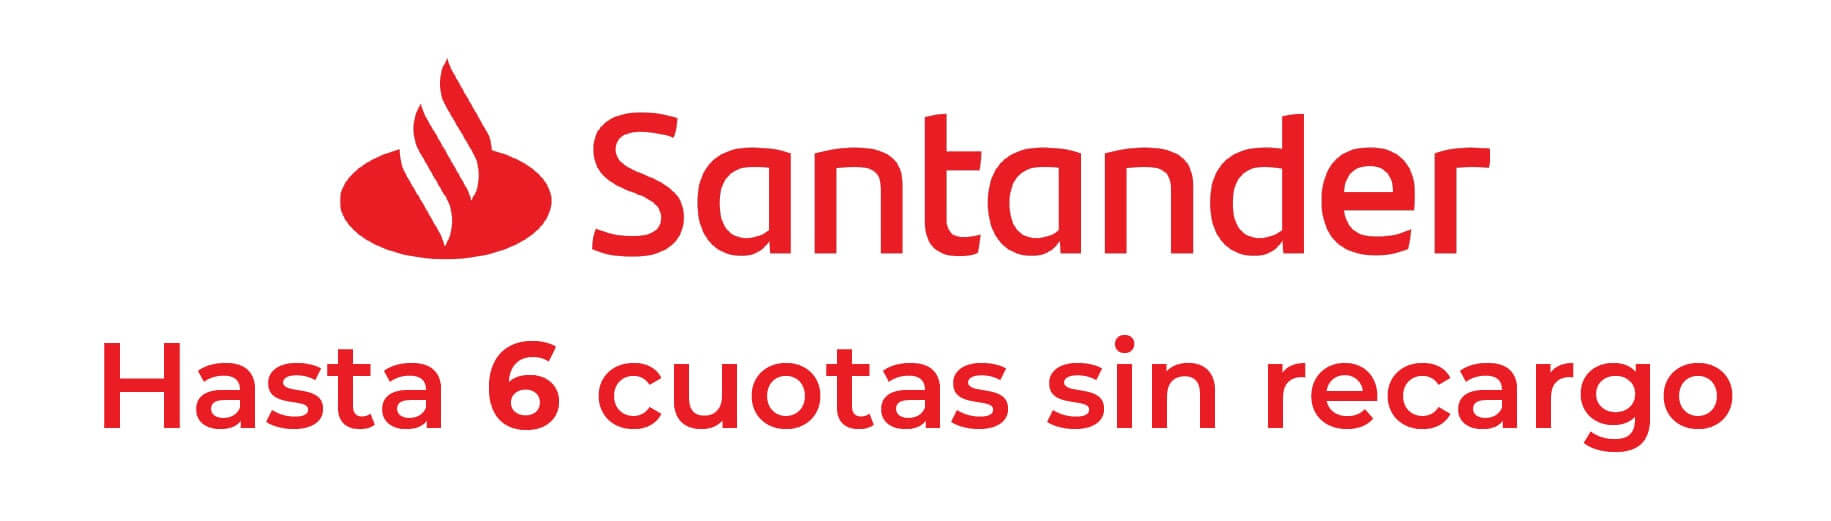 6 cuotas con Santander